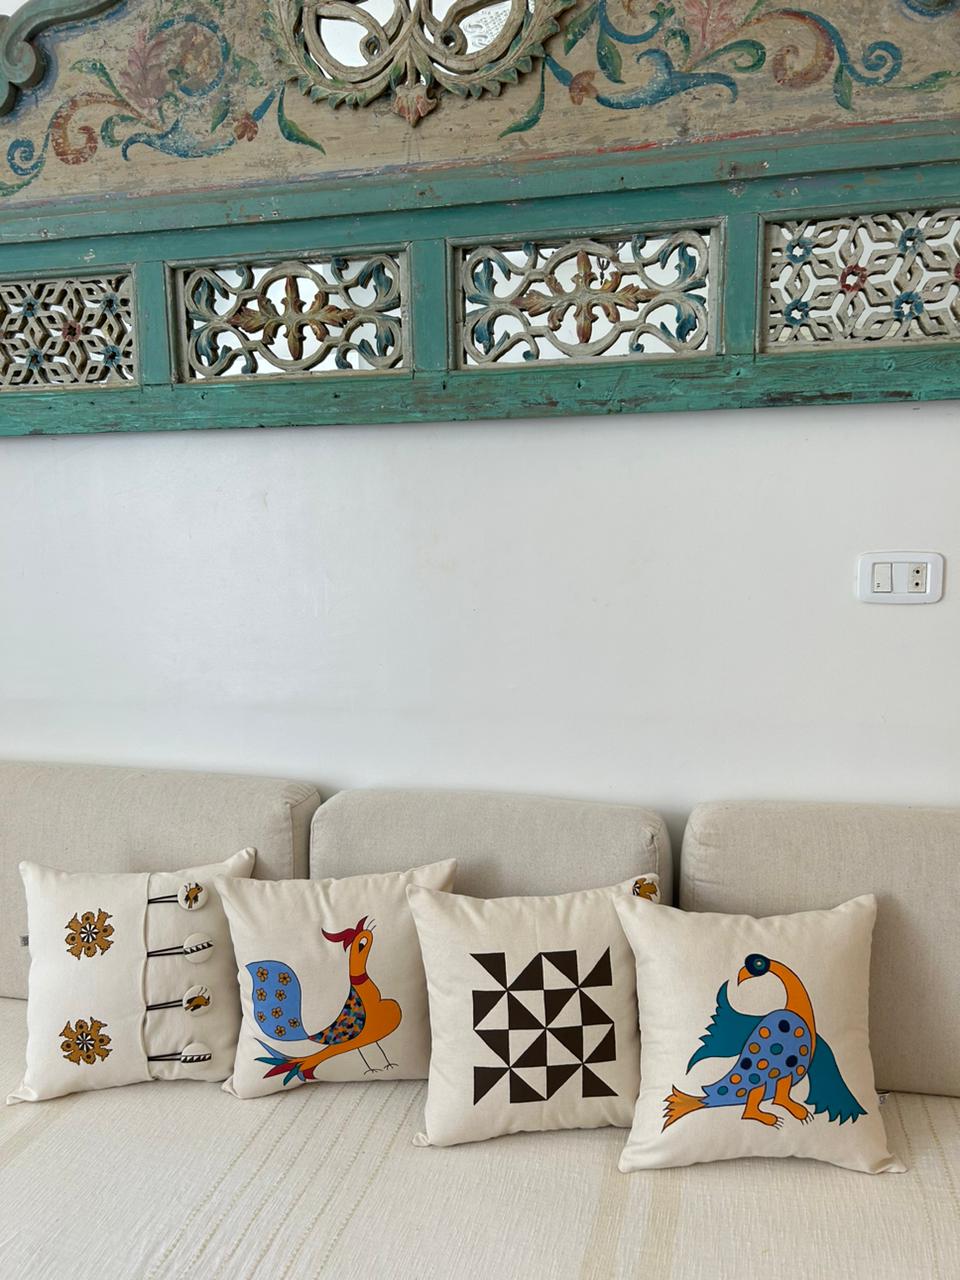 Coussin fait main, inspiré des motifs traditionnels de céramique